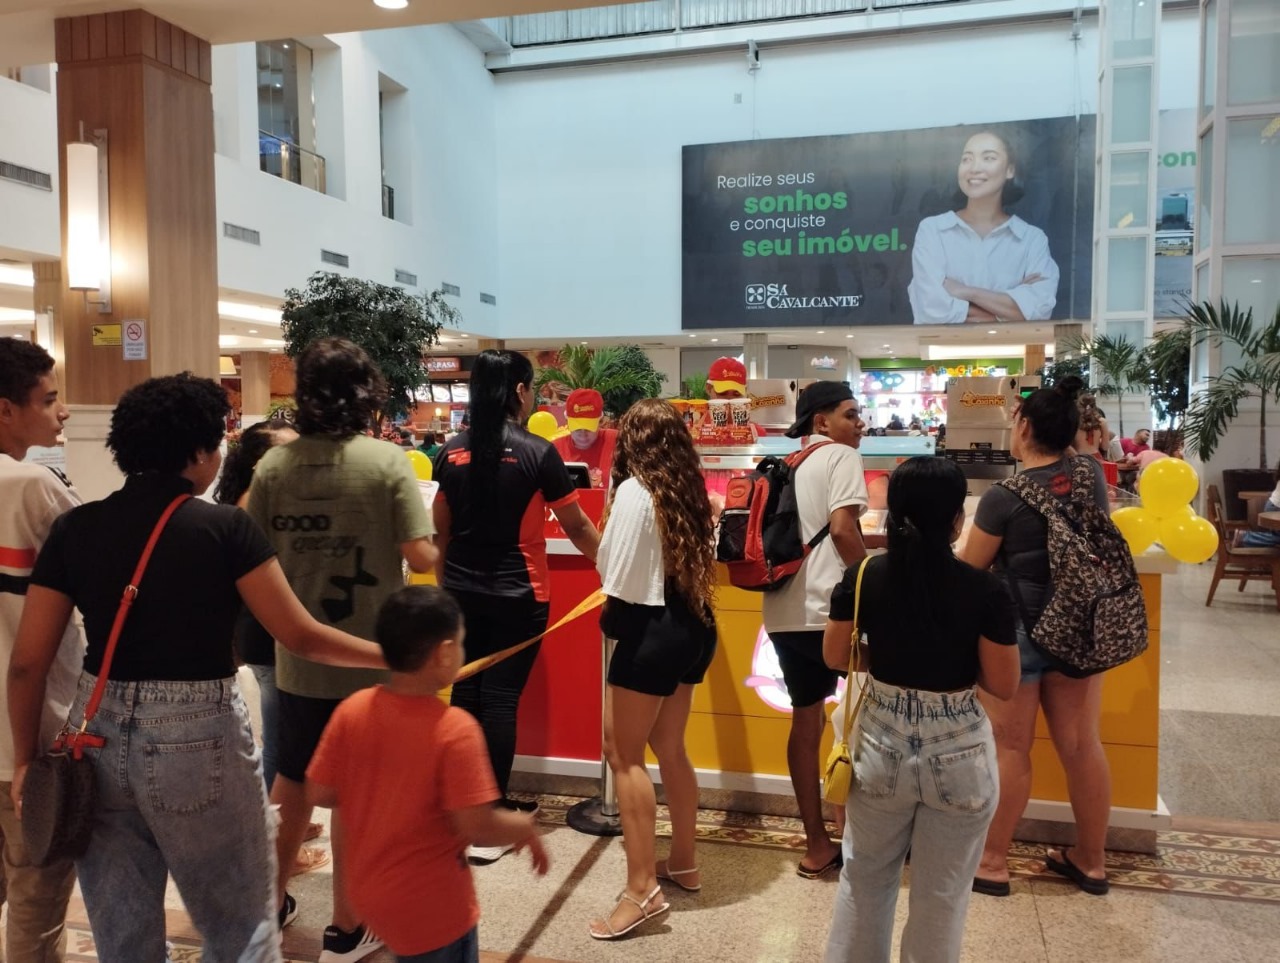 Loucos por Coxinha atinge a marca de 1 milhão de coxinhas vendidas em um único dia